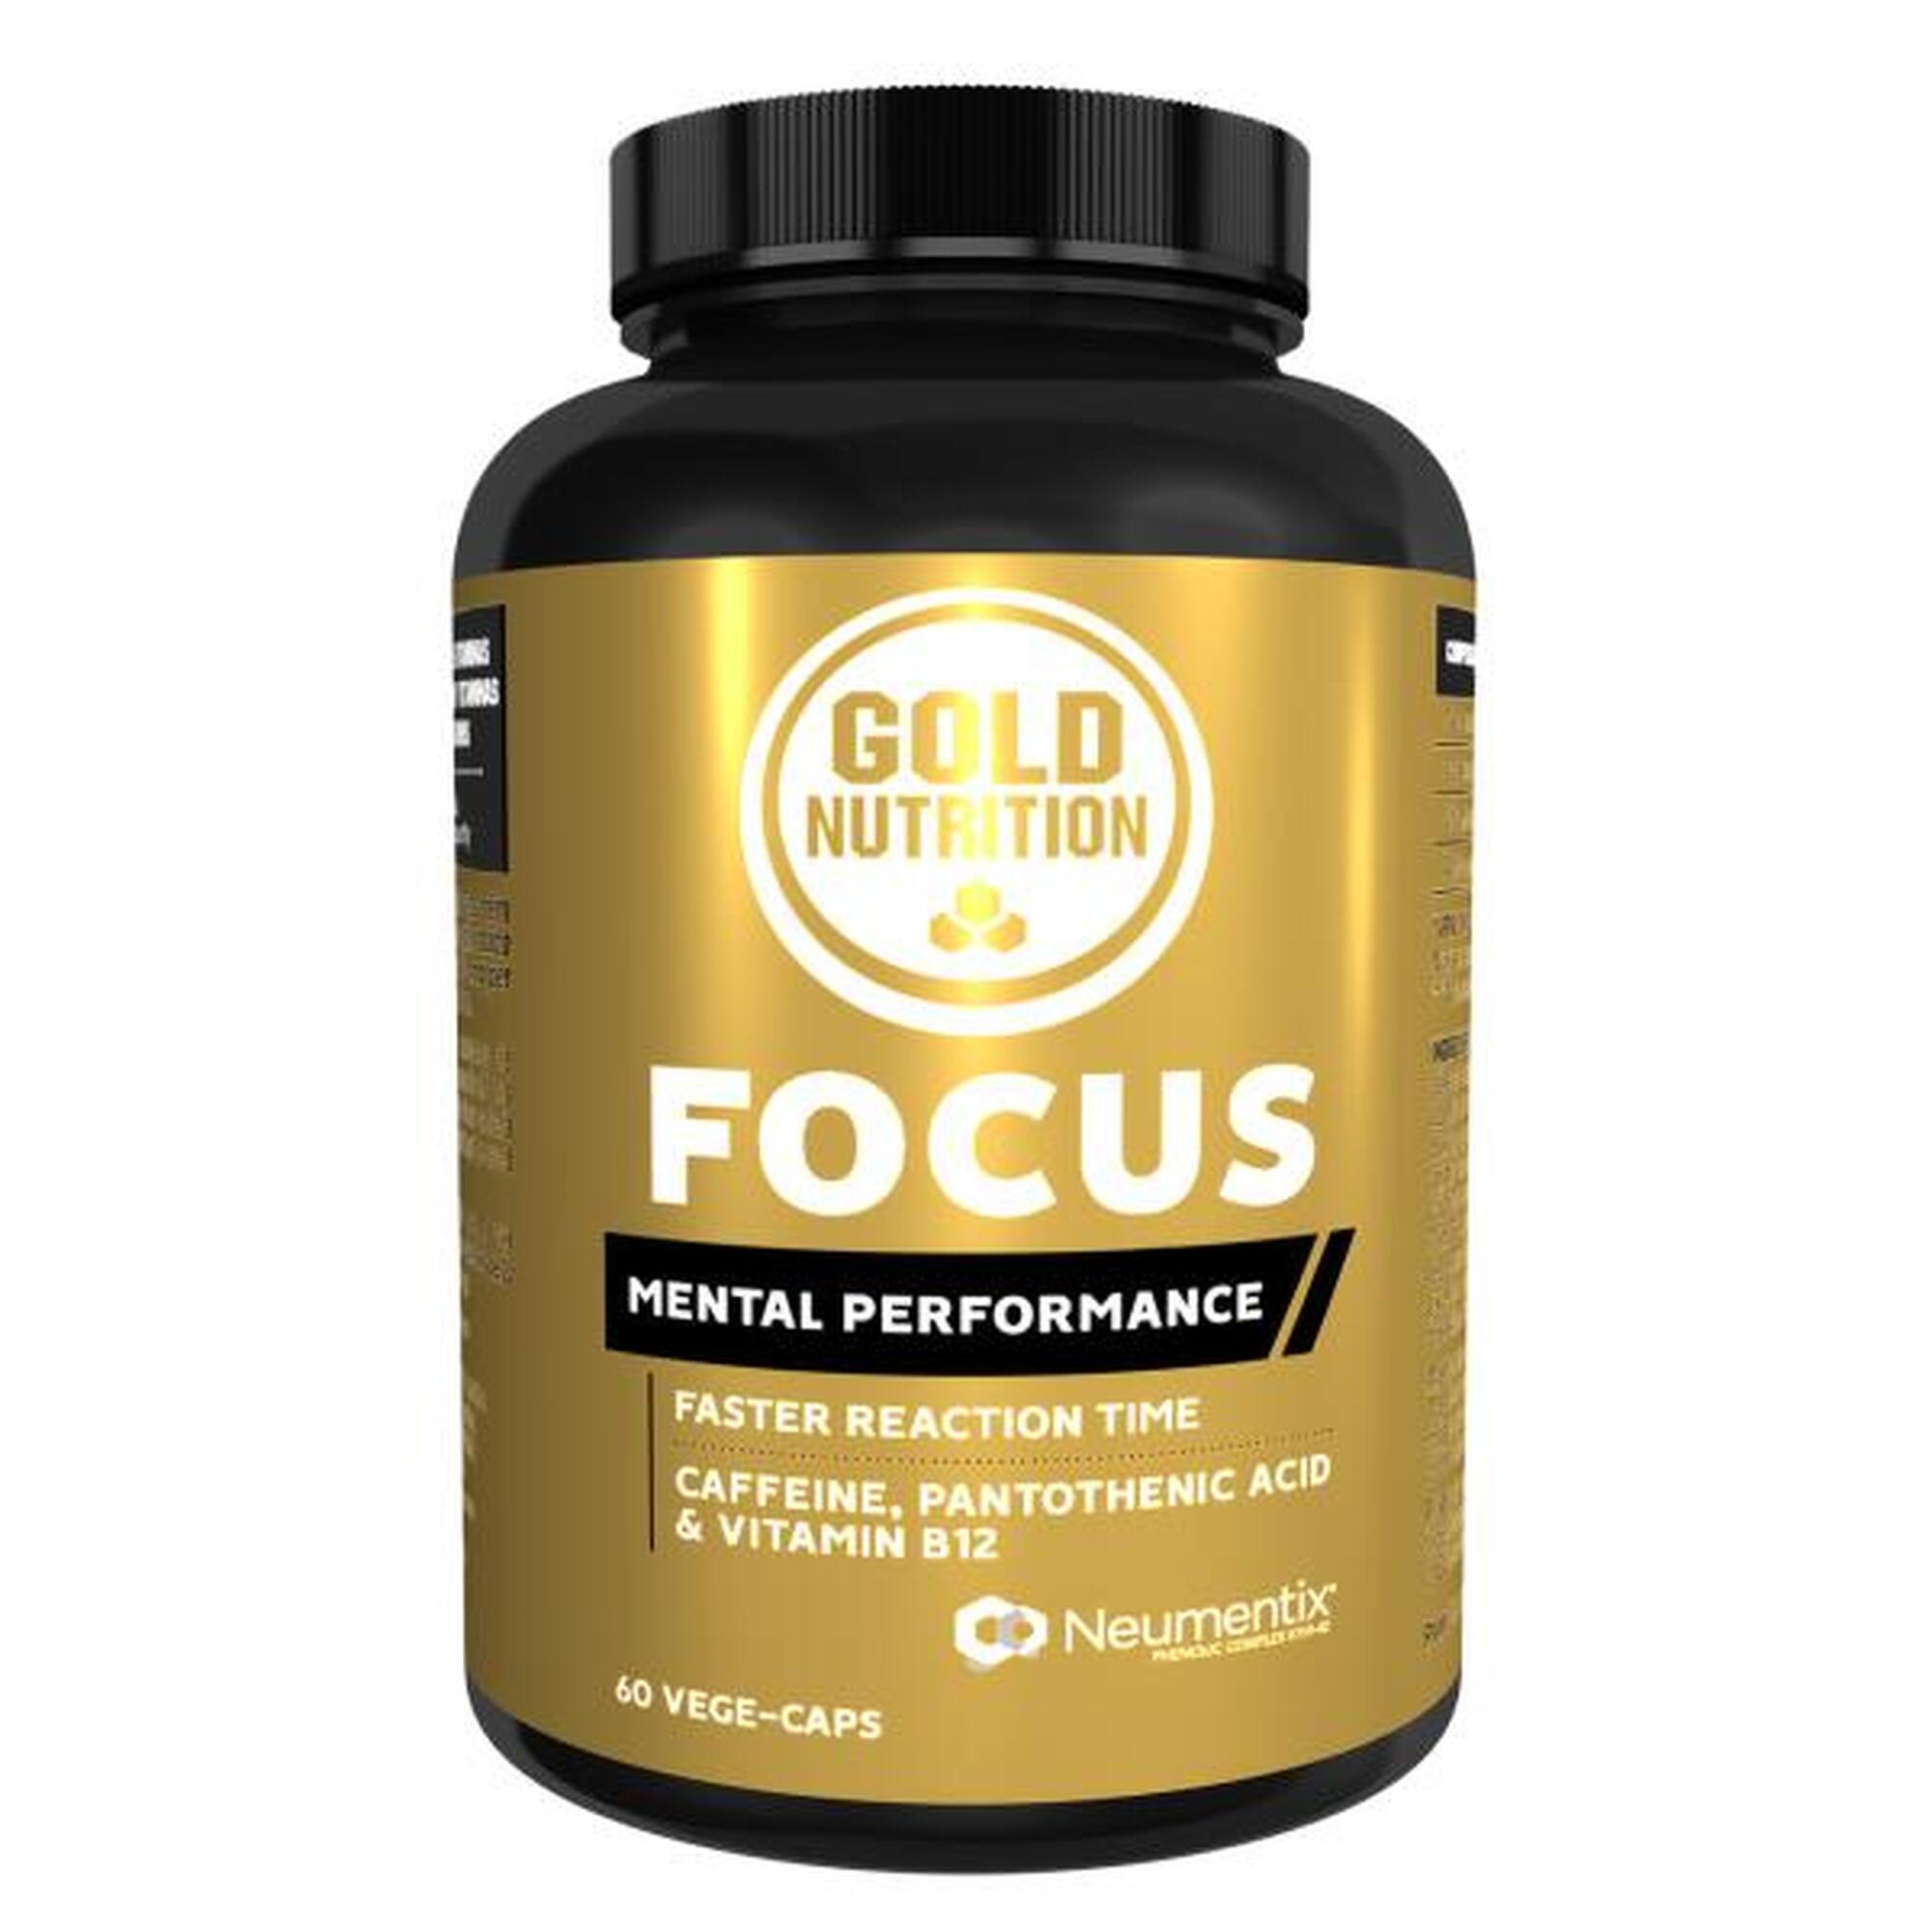 Supliment alimentar pentru functia cognitiva, Focus GoldNutrition, 60 capsule